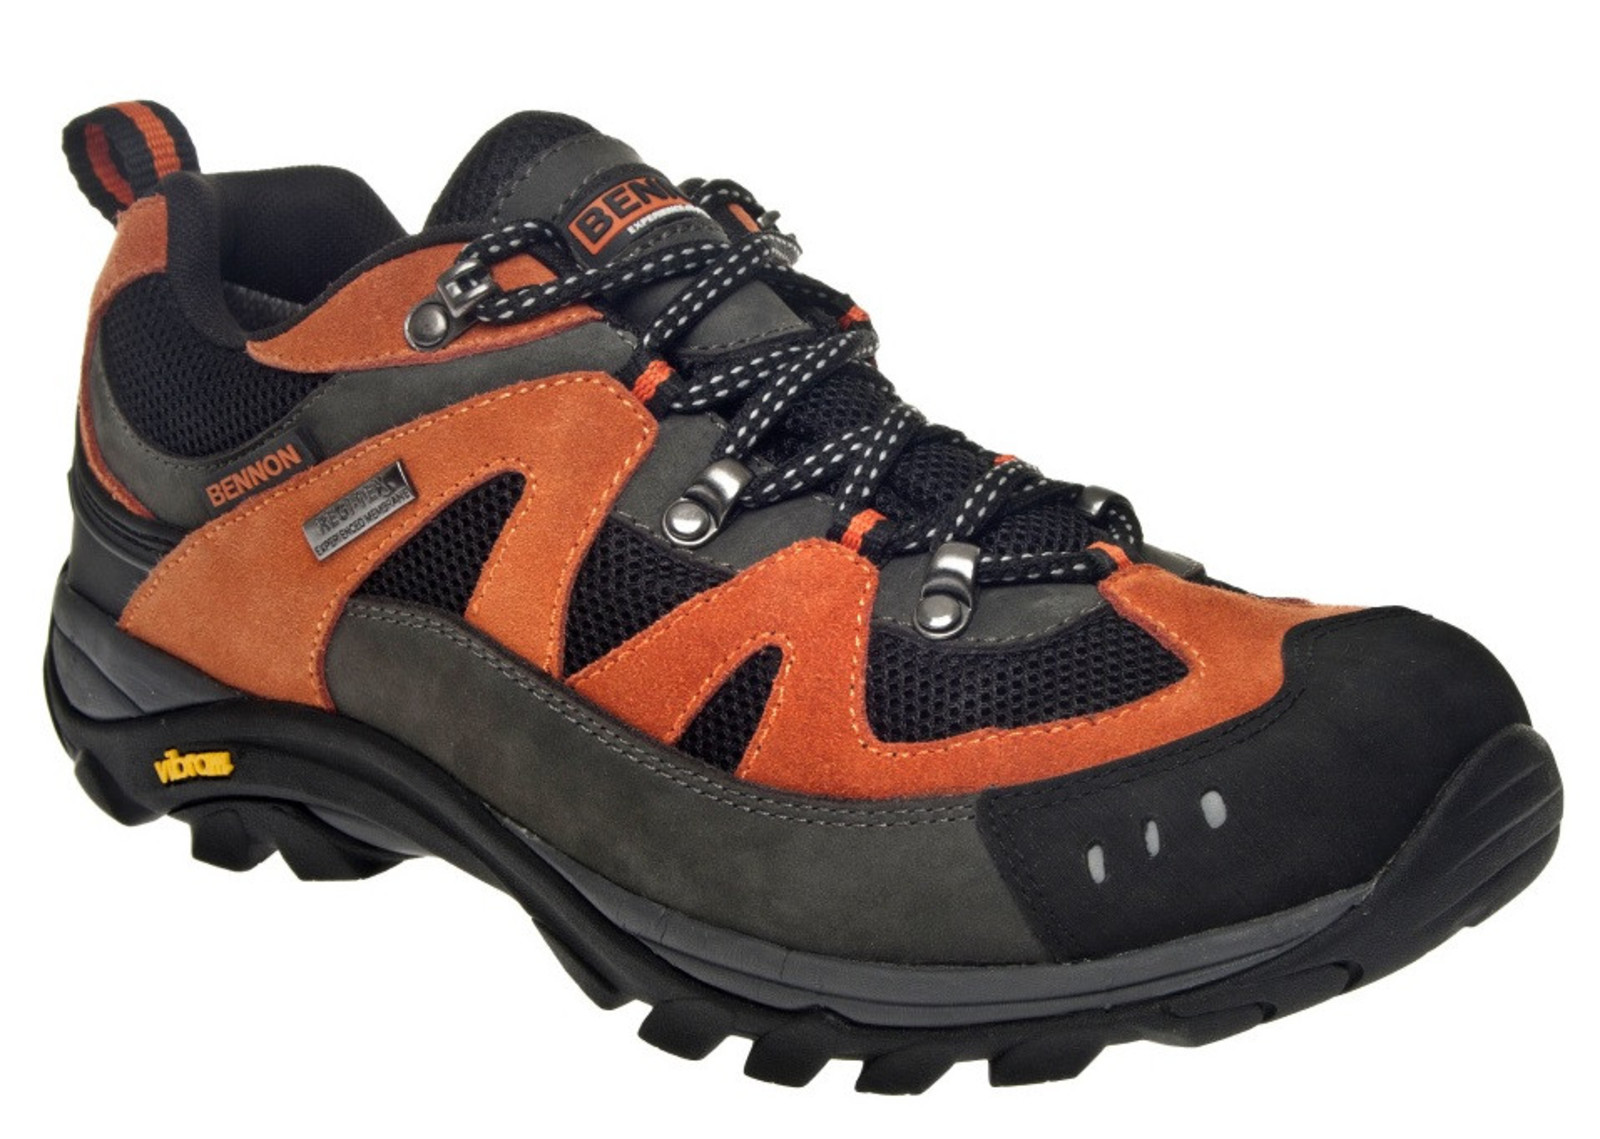 Outdoorové topánky Bennon Emperado s membránou - veľkosť: 36, farba: sivá/oranžová